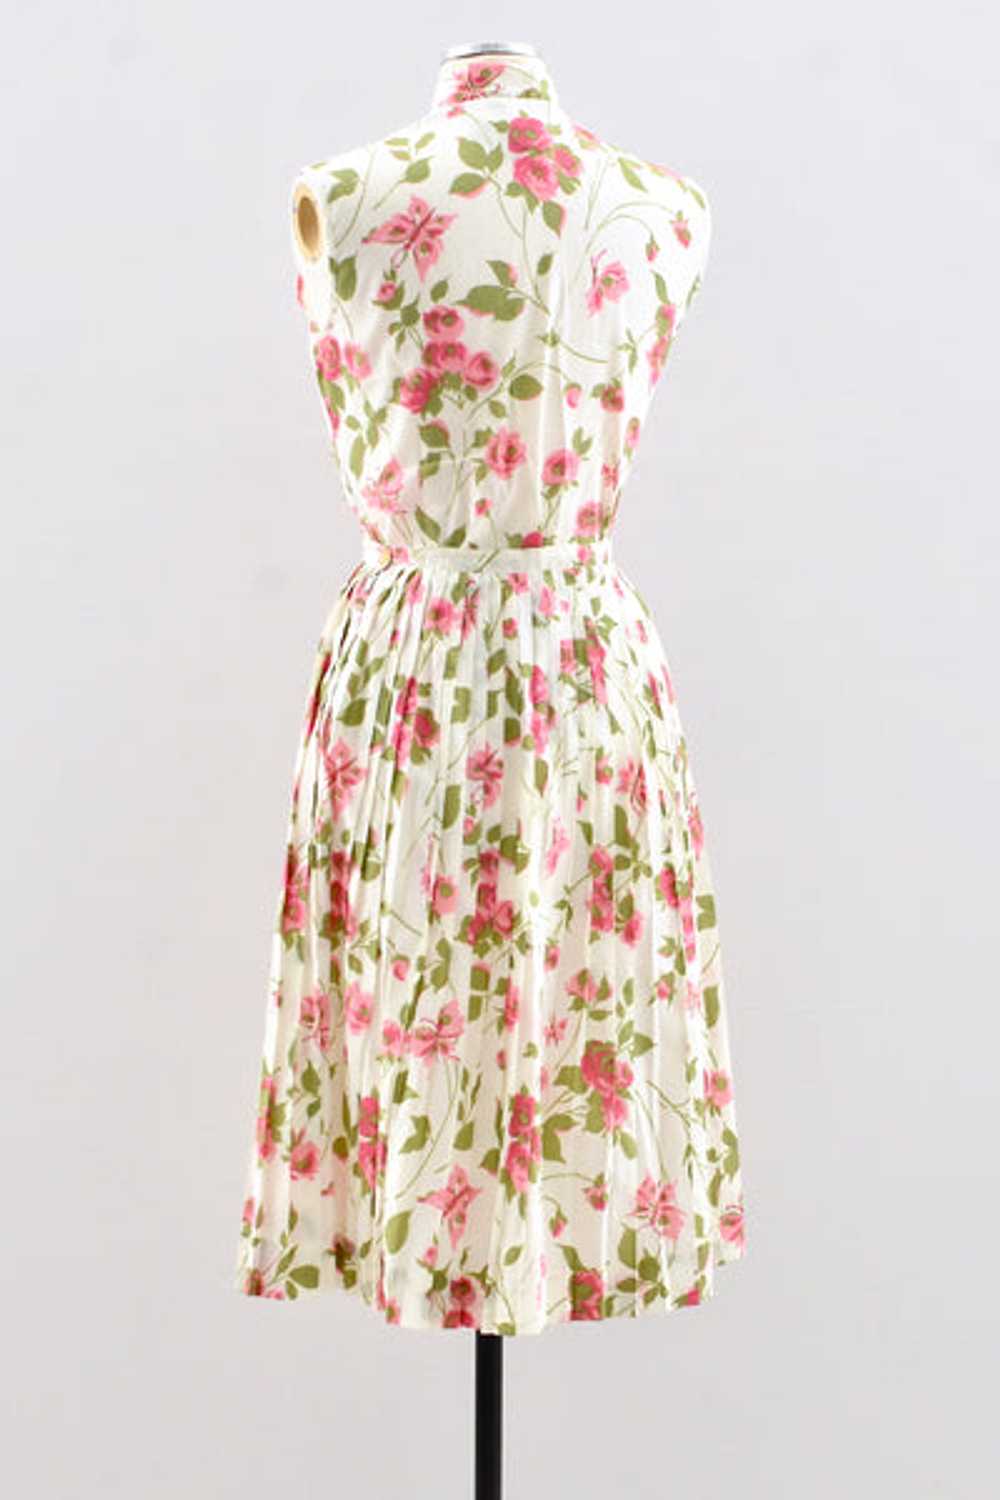 Novelty Rose Print Skirt / S M - image 3